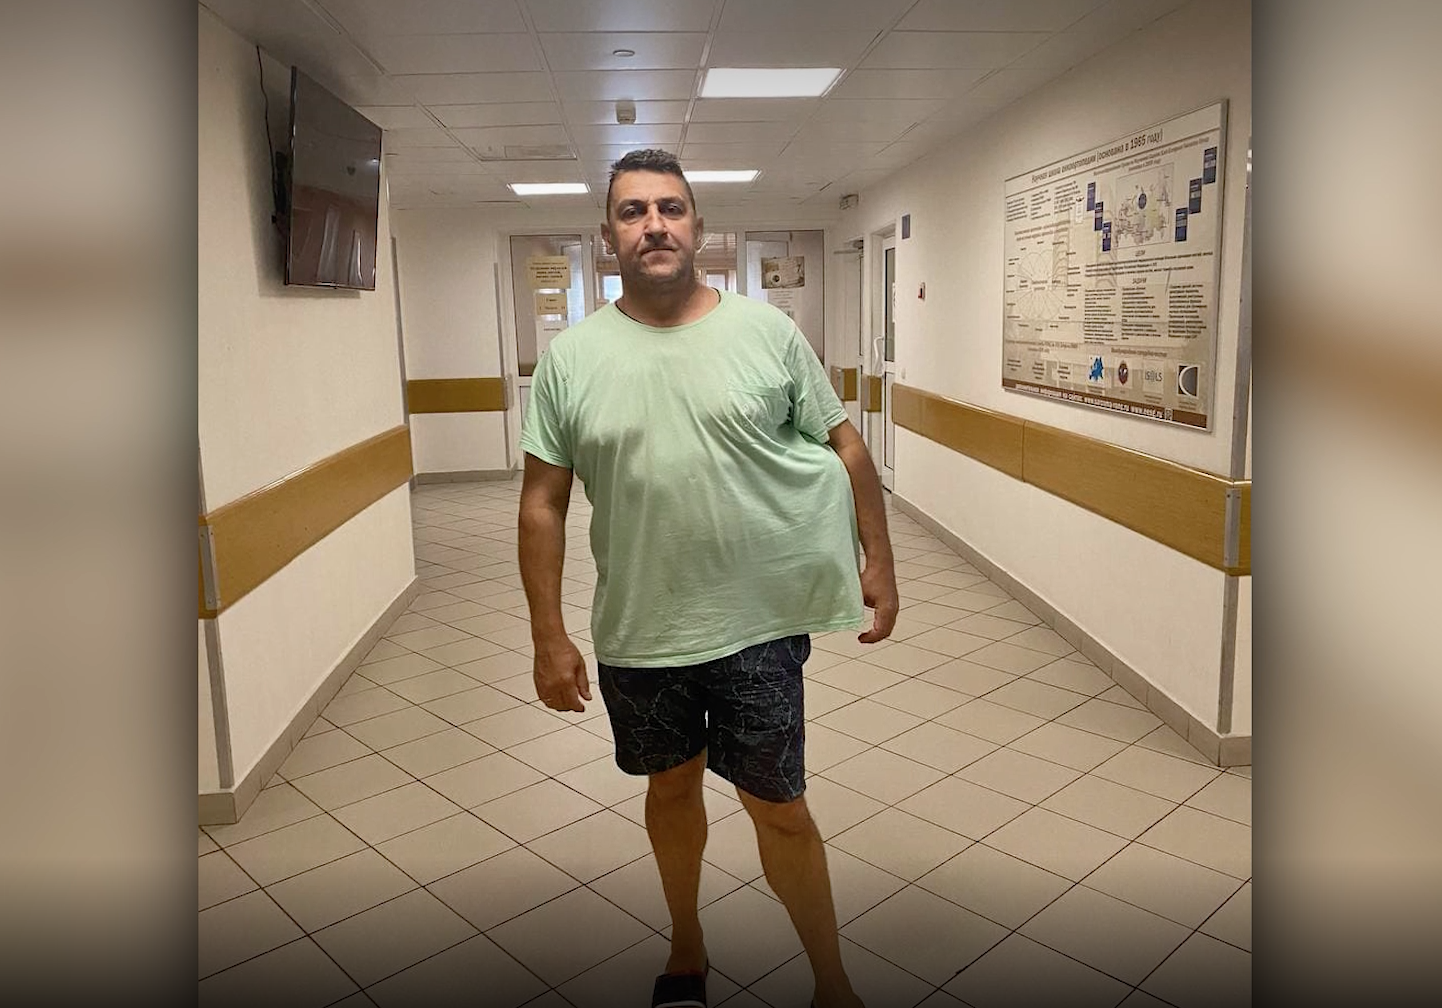 "В кресло даже не влезал": В Москве врачи удалили пациенту опухоль весом 10 килограммов